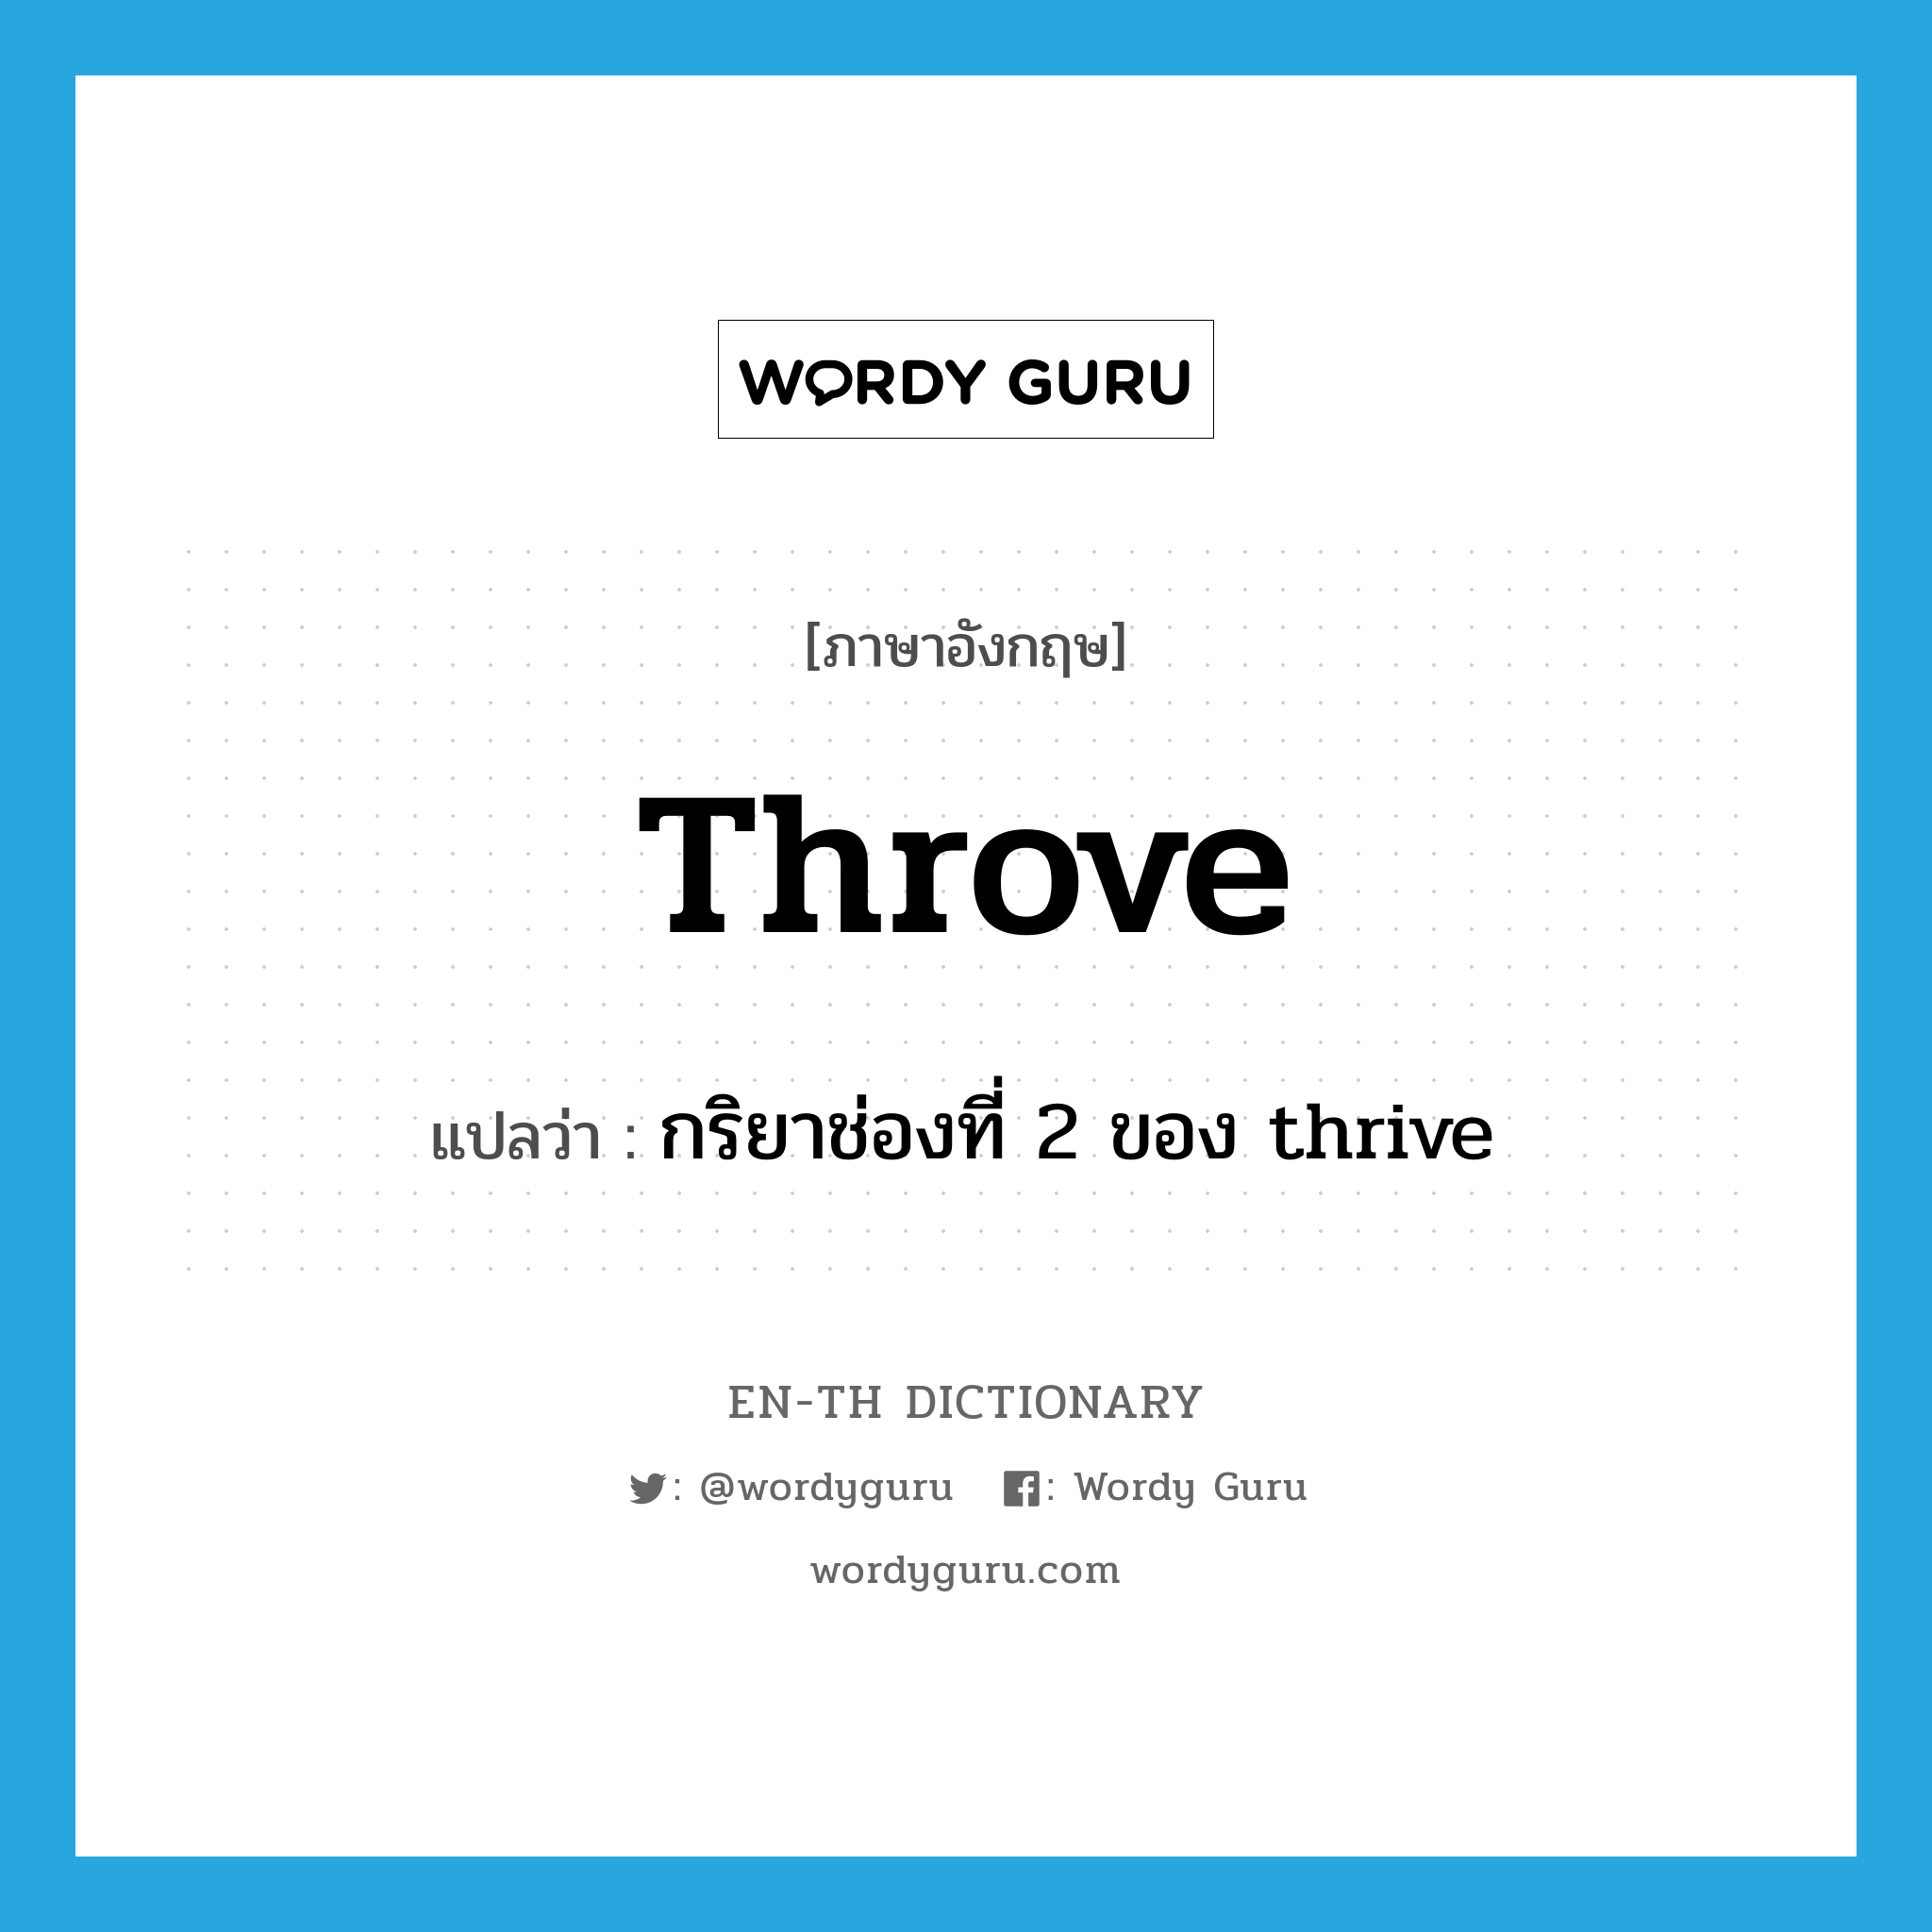 กริยาช่องที่ 2 ของ thrive ภาษาอังกฤษ?, คำศัพท์ภาษาอังกฤษ กริยาช่องที่ 2 ของ thrive แปลว่า throve ประเภท VI หมวด VI